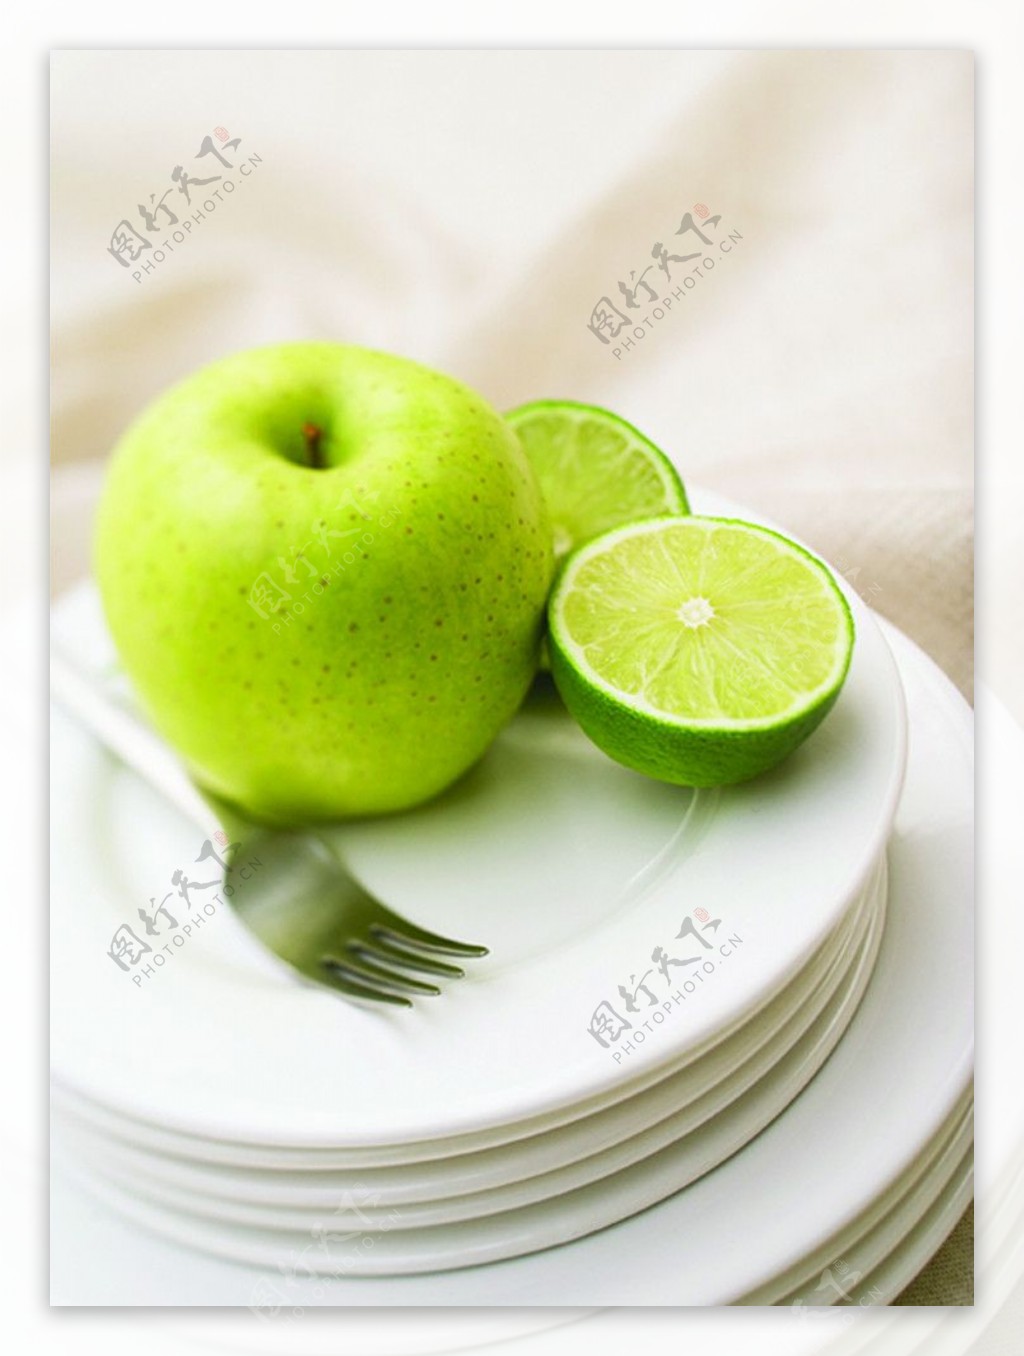 青苹果餐盘图片